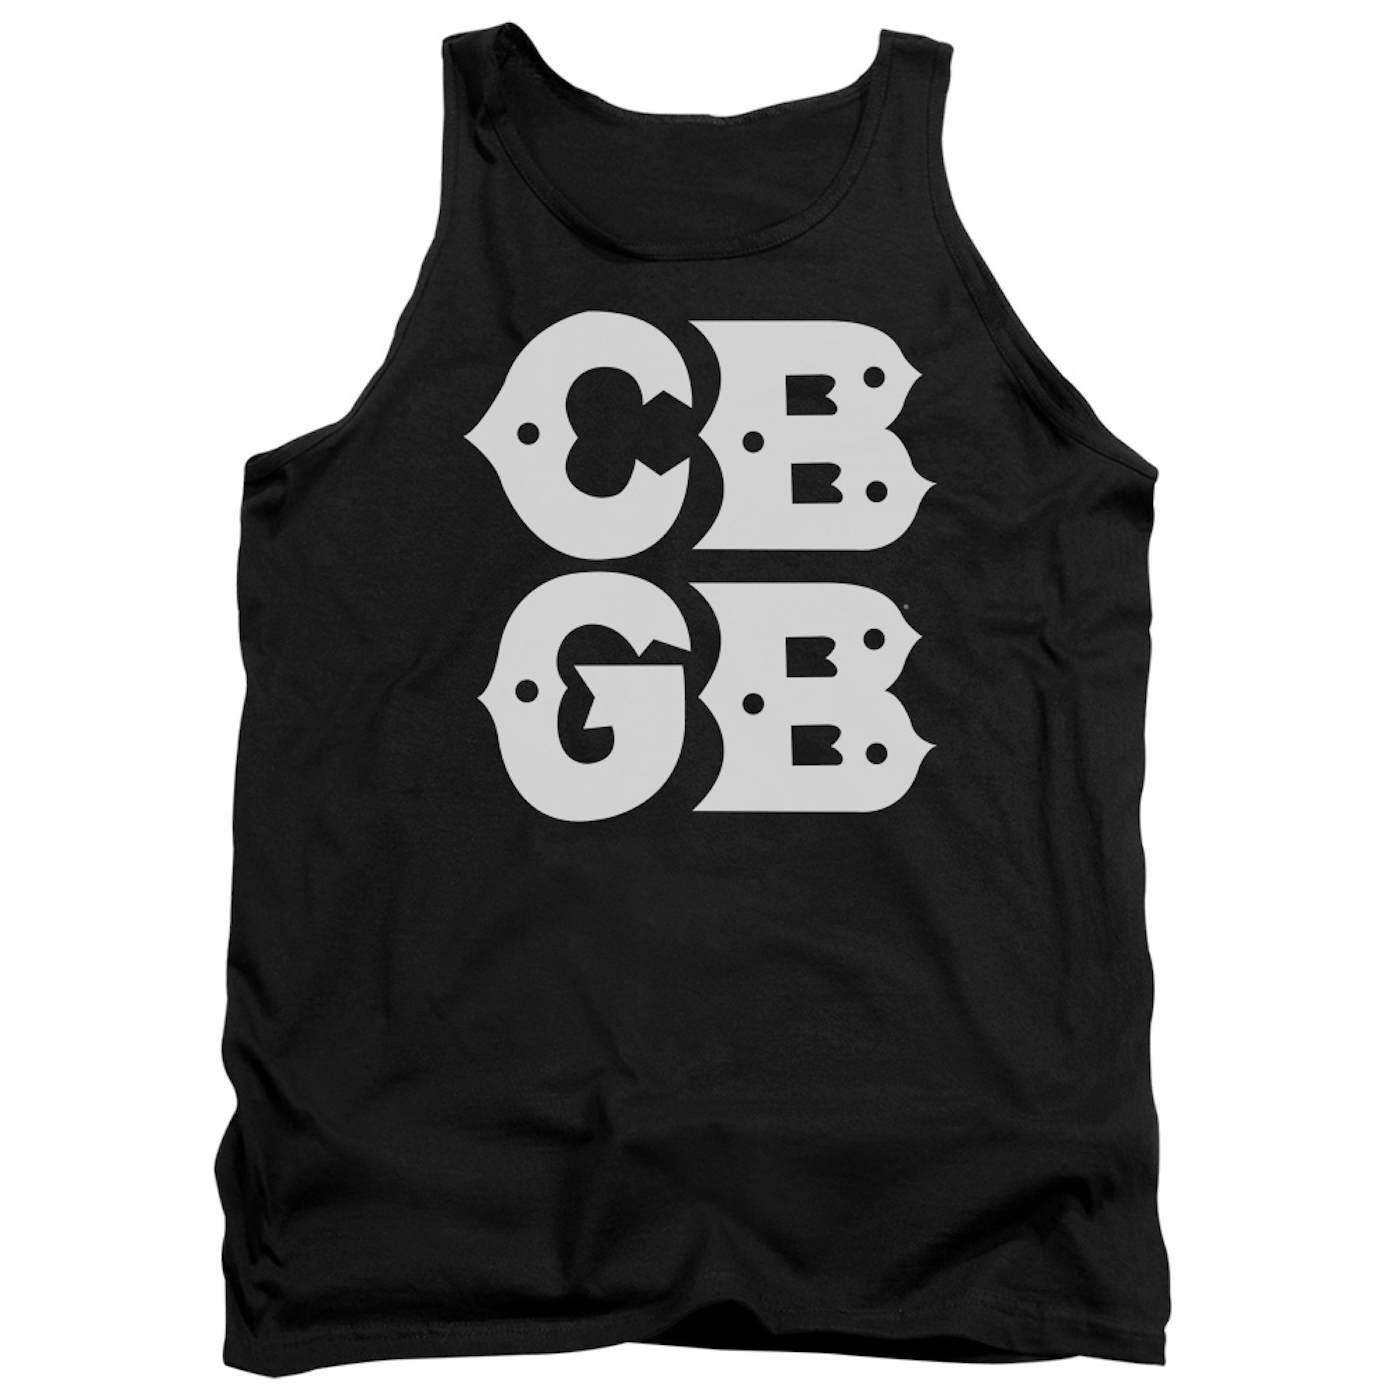 Cbgb Tank Top | STACKED LOGO Sleeveless Shirt